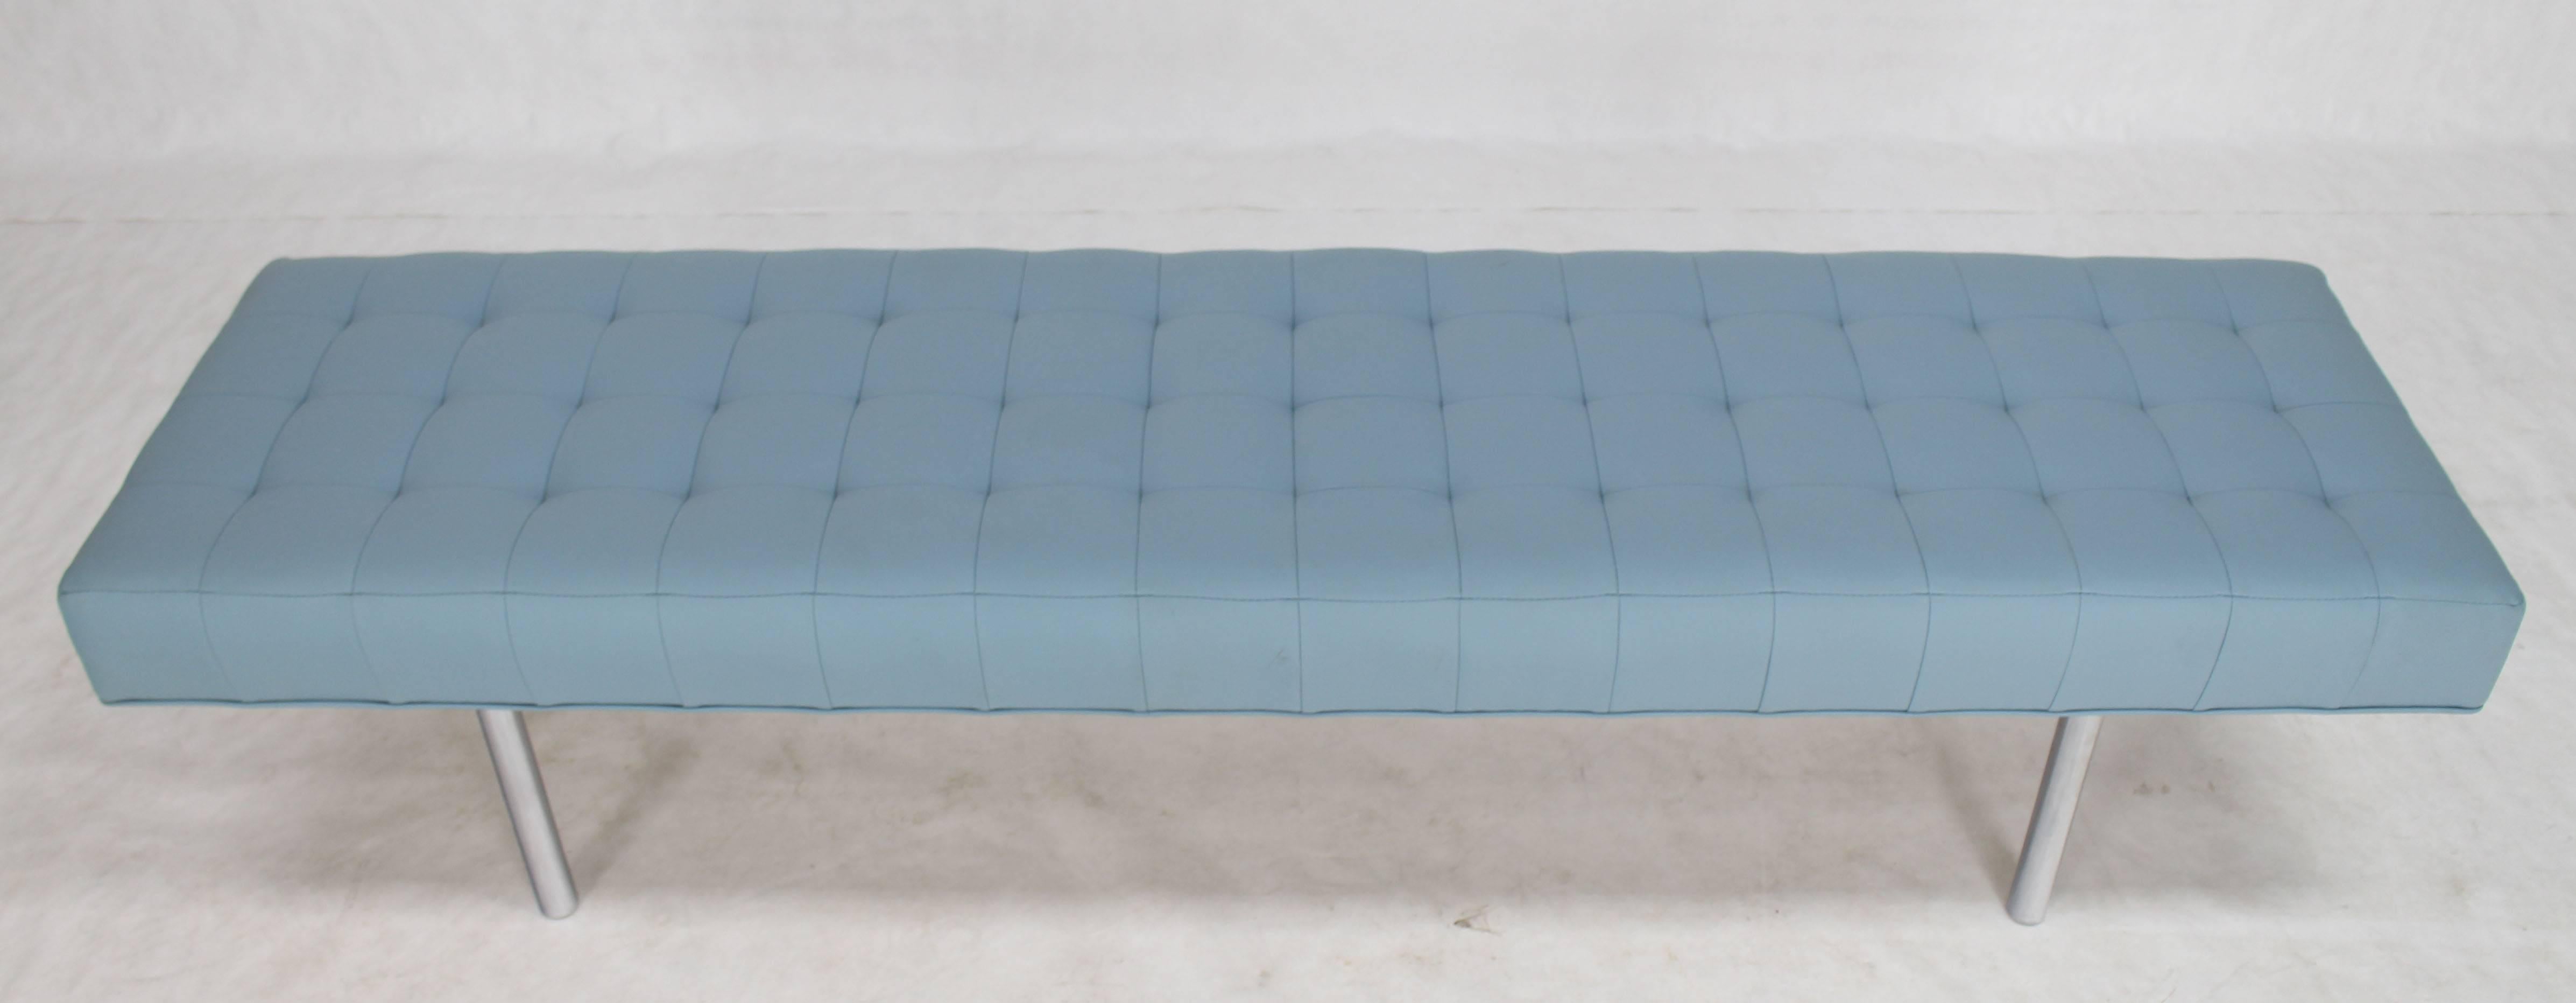 light blue upholstered bench